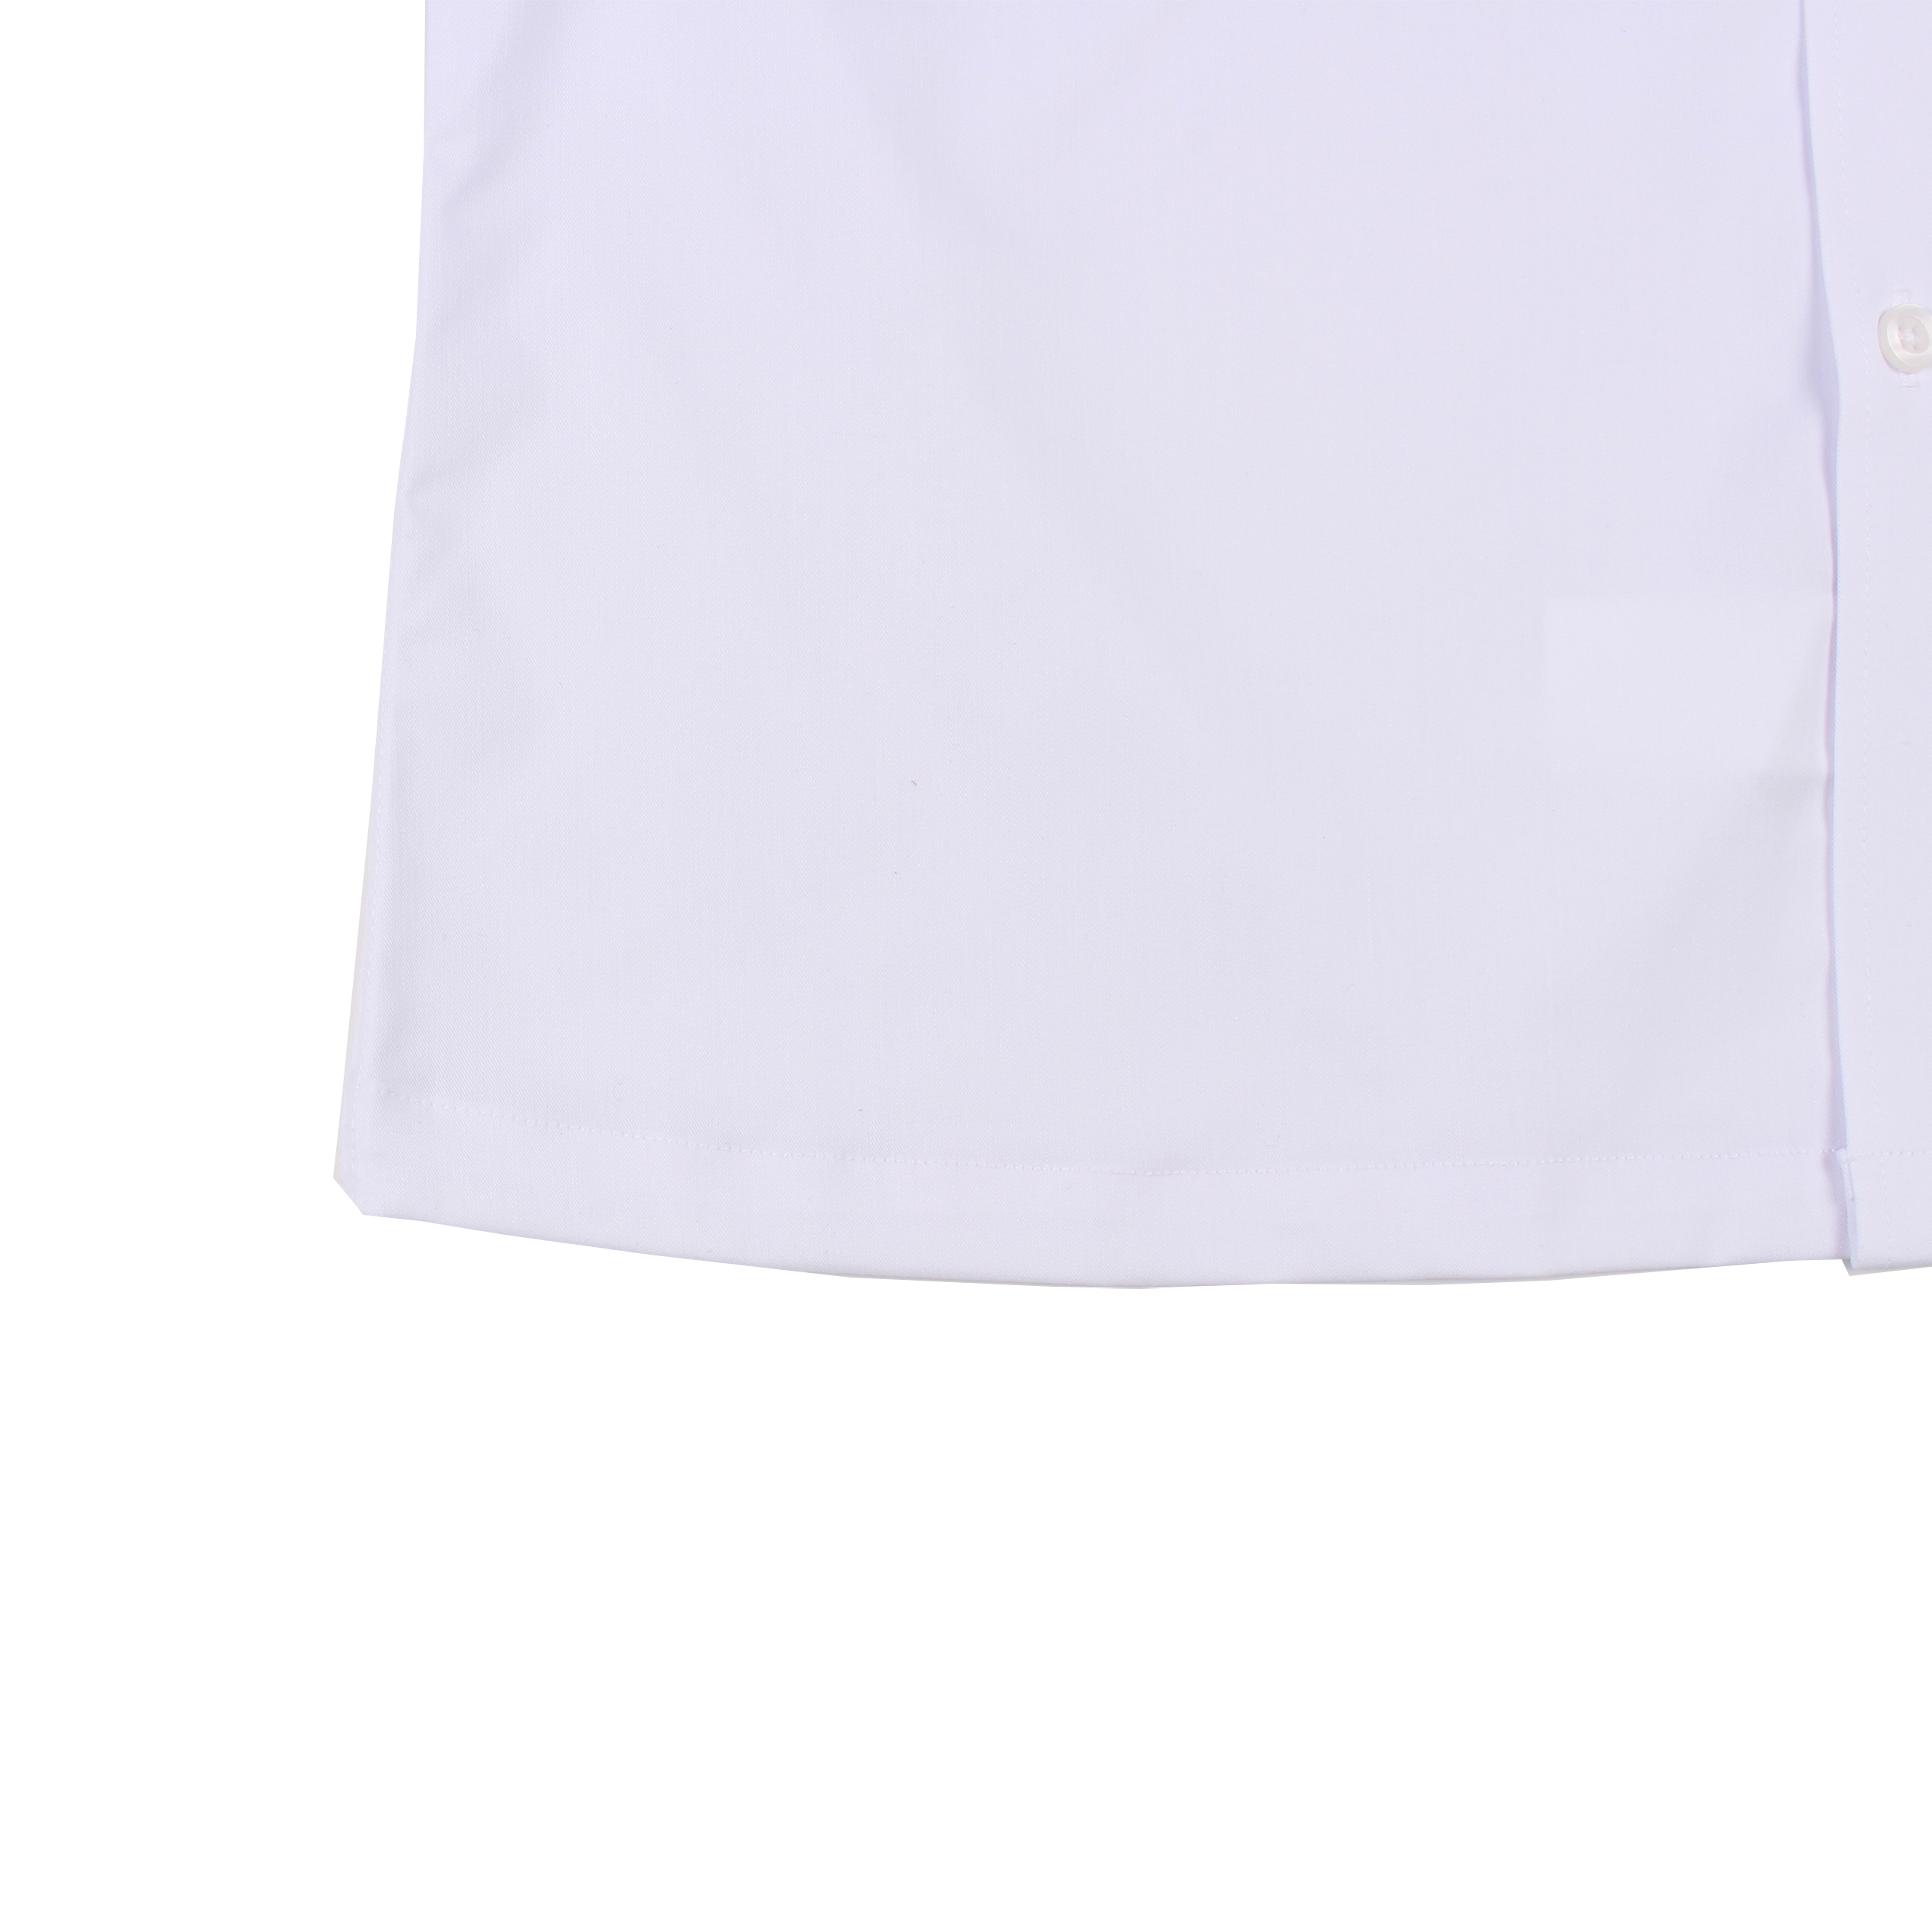 [삼성생활예술고] 교복 셔츠 (화이트) 남학생